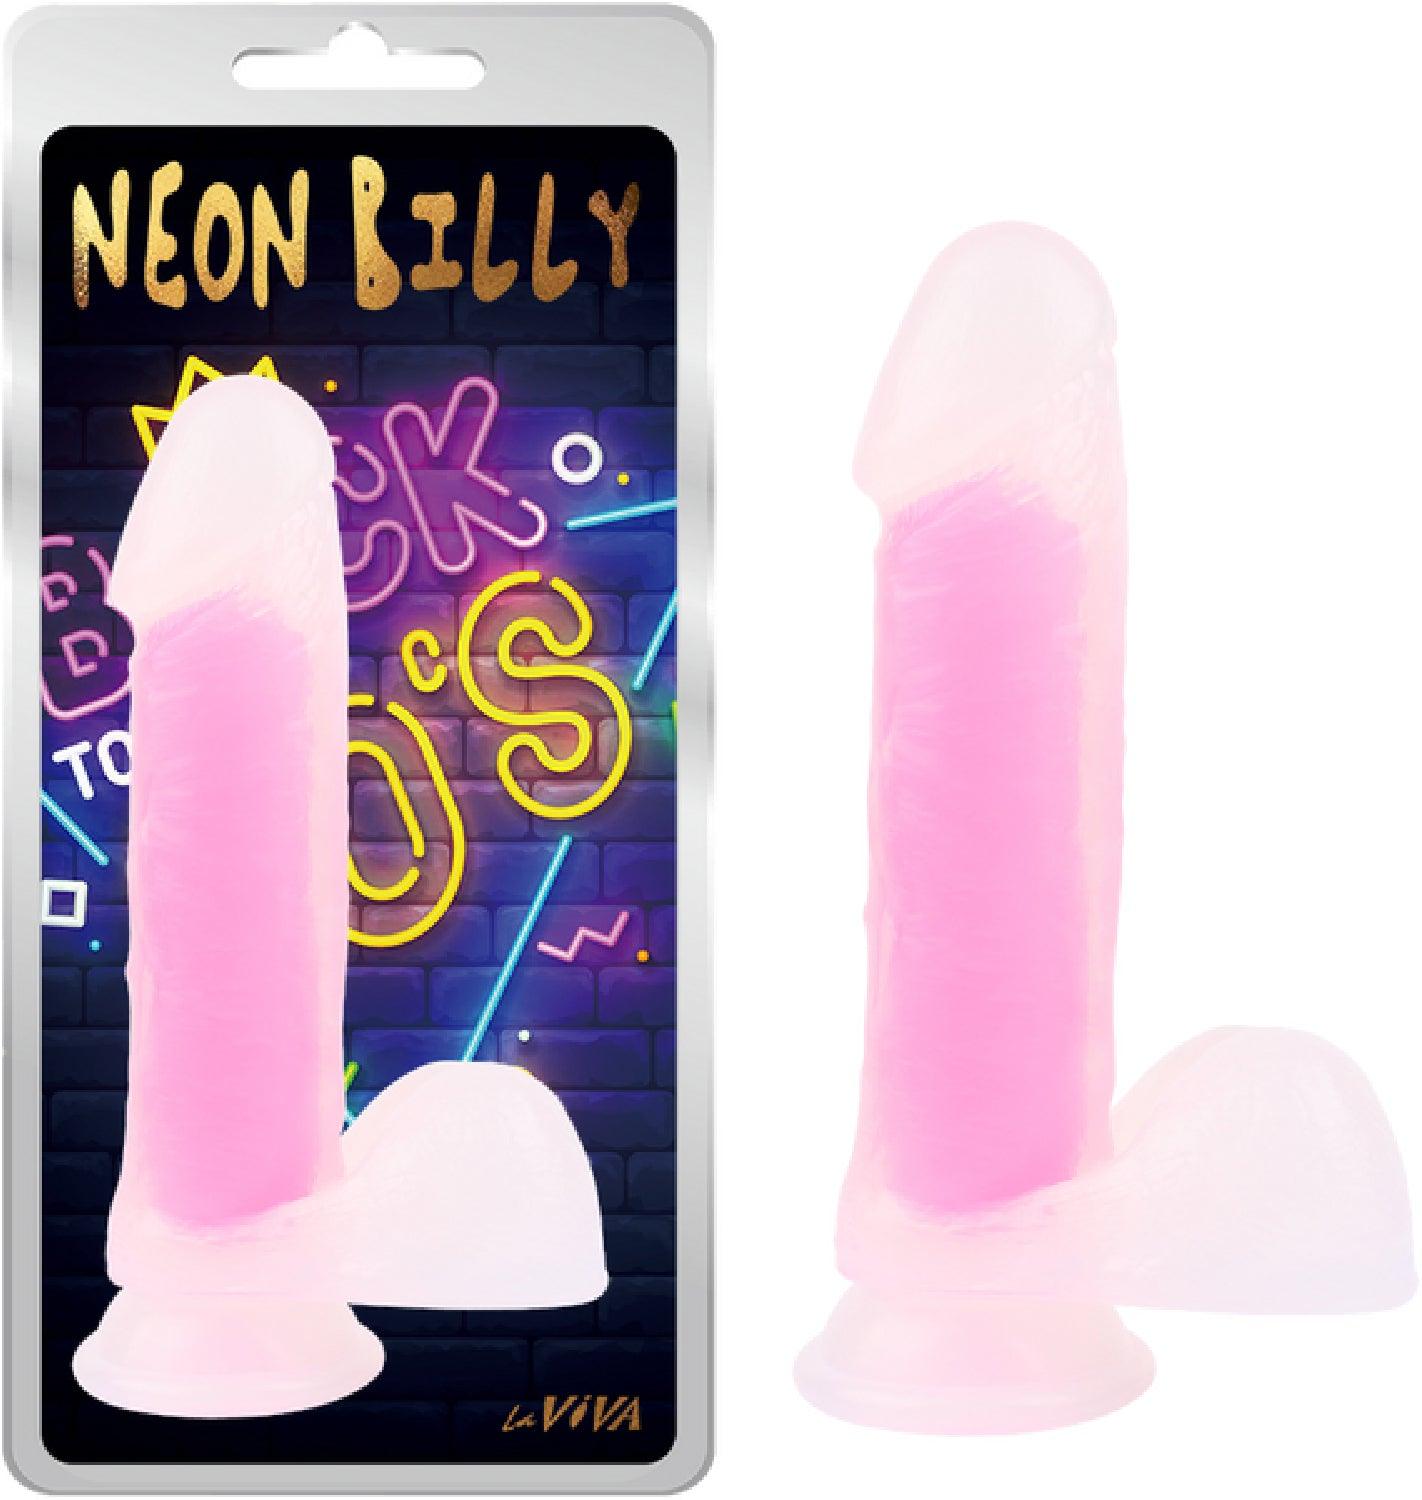 Neon Billy 7.6" - Take A Peek